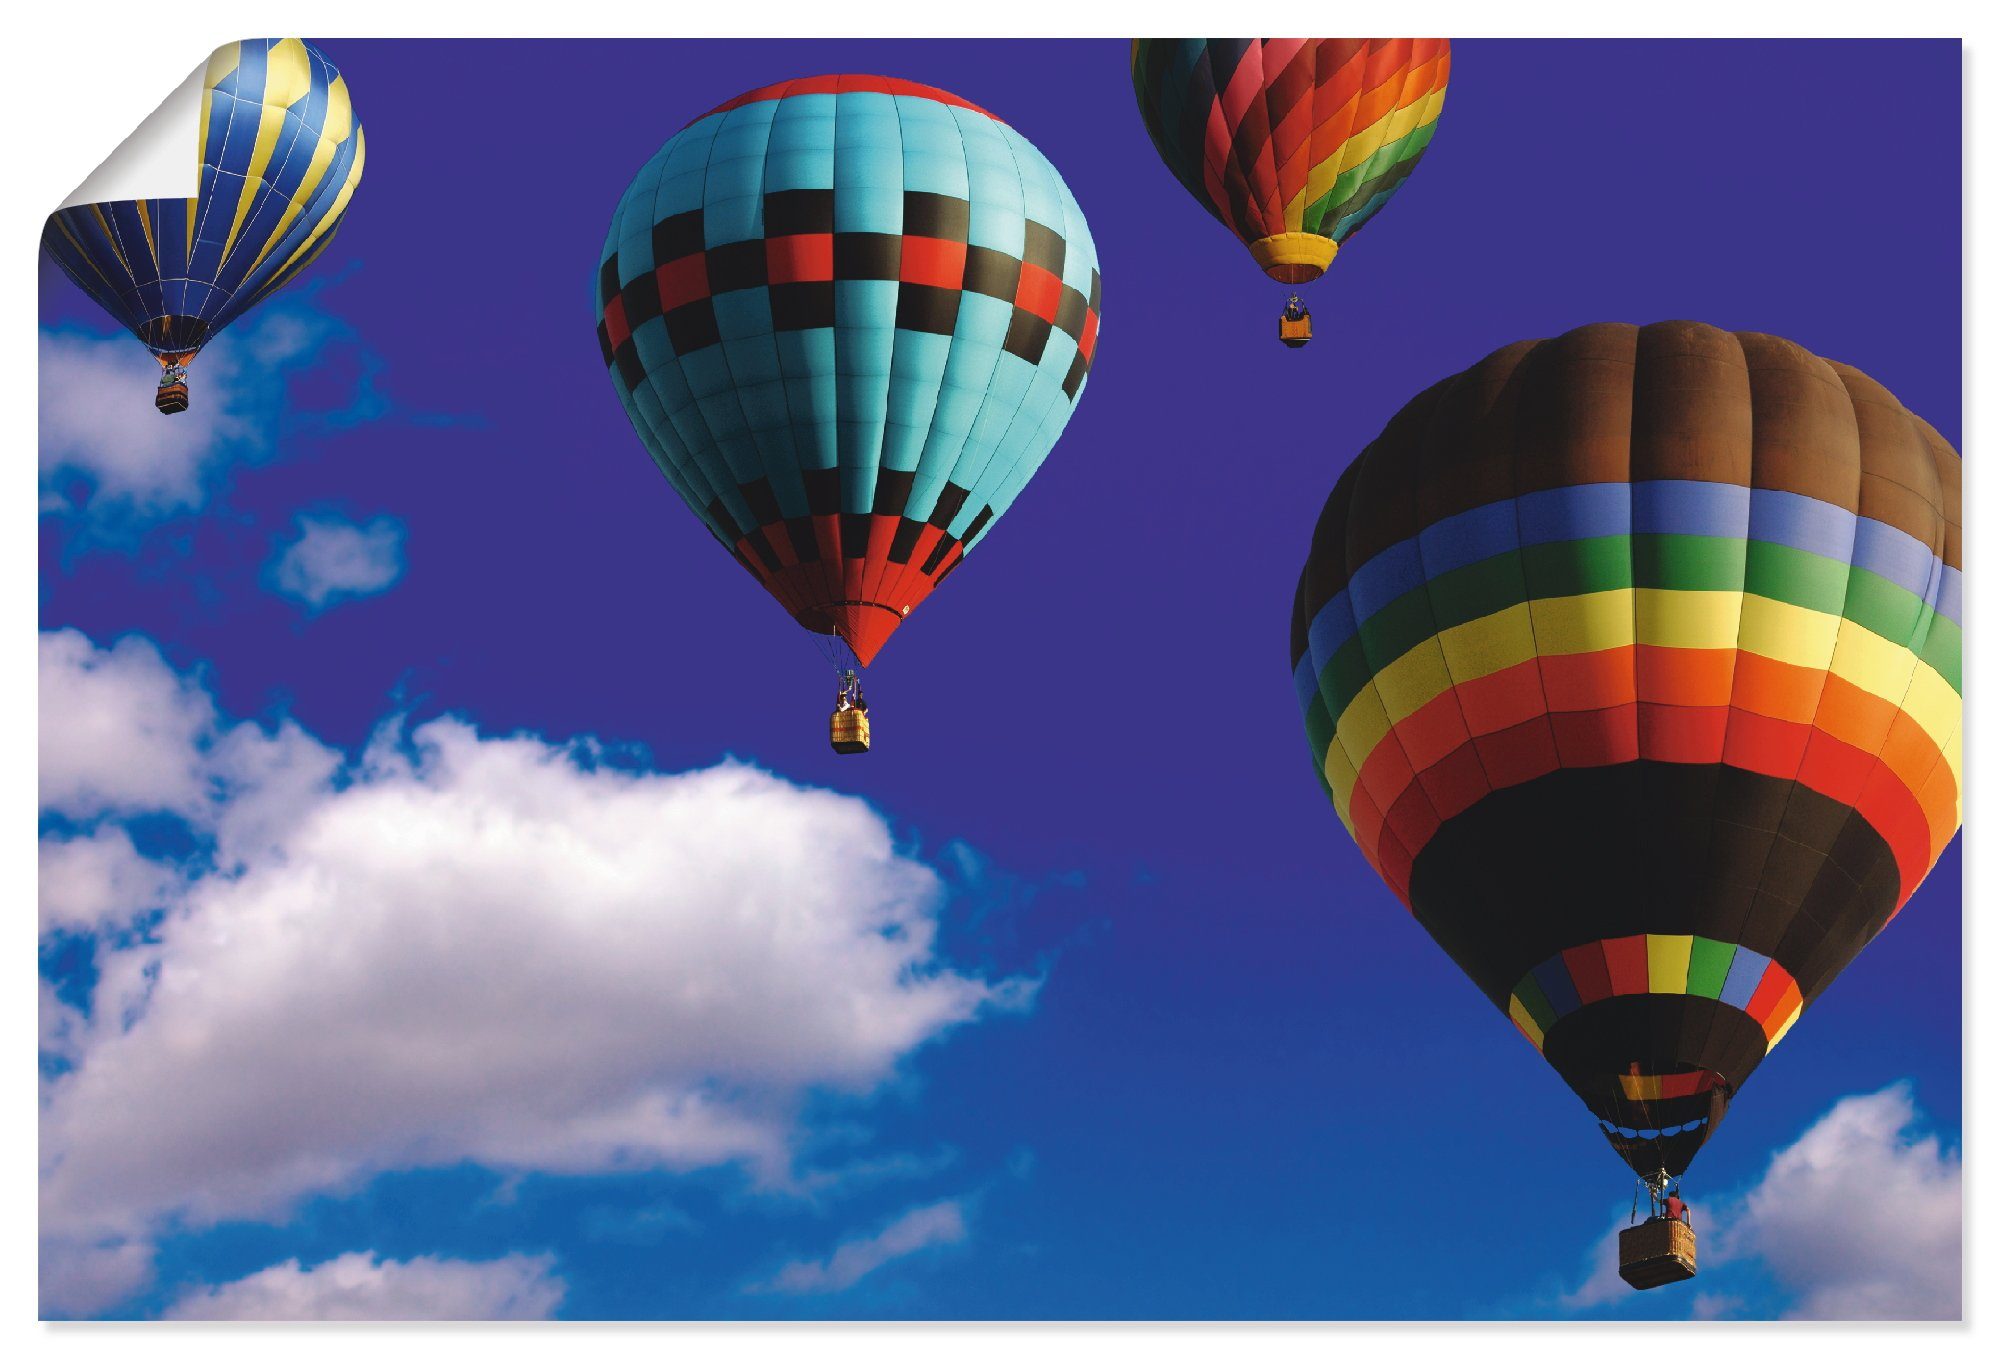 Artland Artprint Heteluchtballonnen in de lucht in vele afmetingen & productsoorten - artprint van aluminium / artprint voor buiten, artprint op linnen, poster, muursticker / wandf